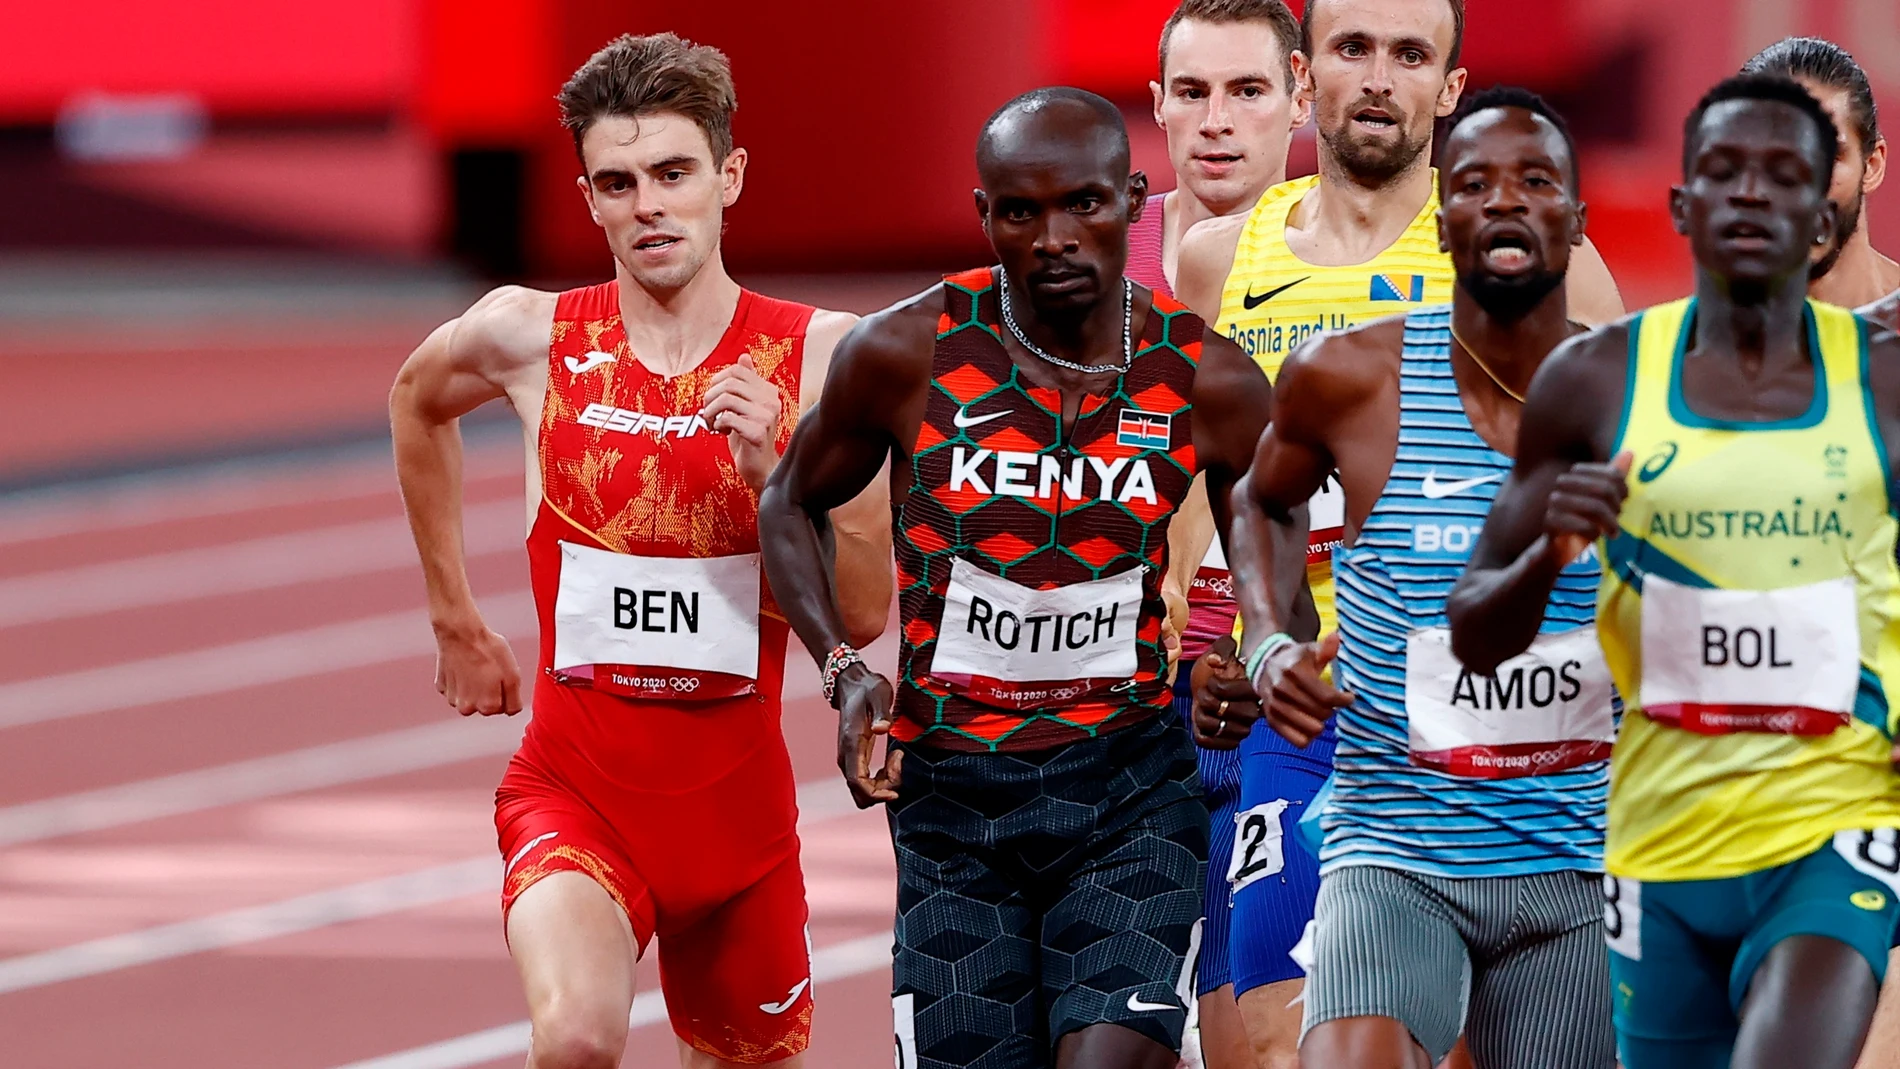 El keniata Ferguson Rotich y el español Adrián Ben, en pleno esfuerzo durante la final de 800 metros en el Estadio Olímpico de Tokio